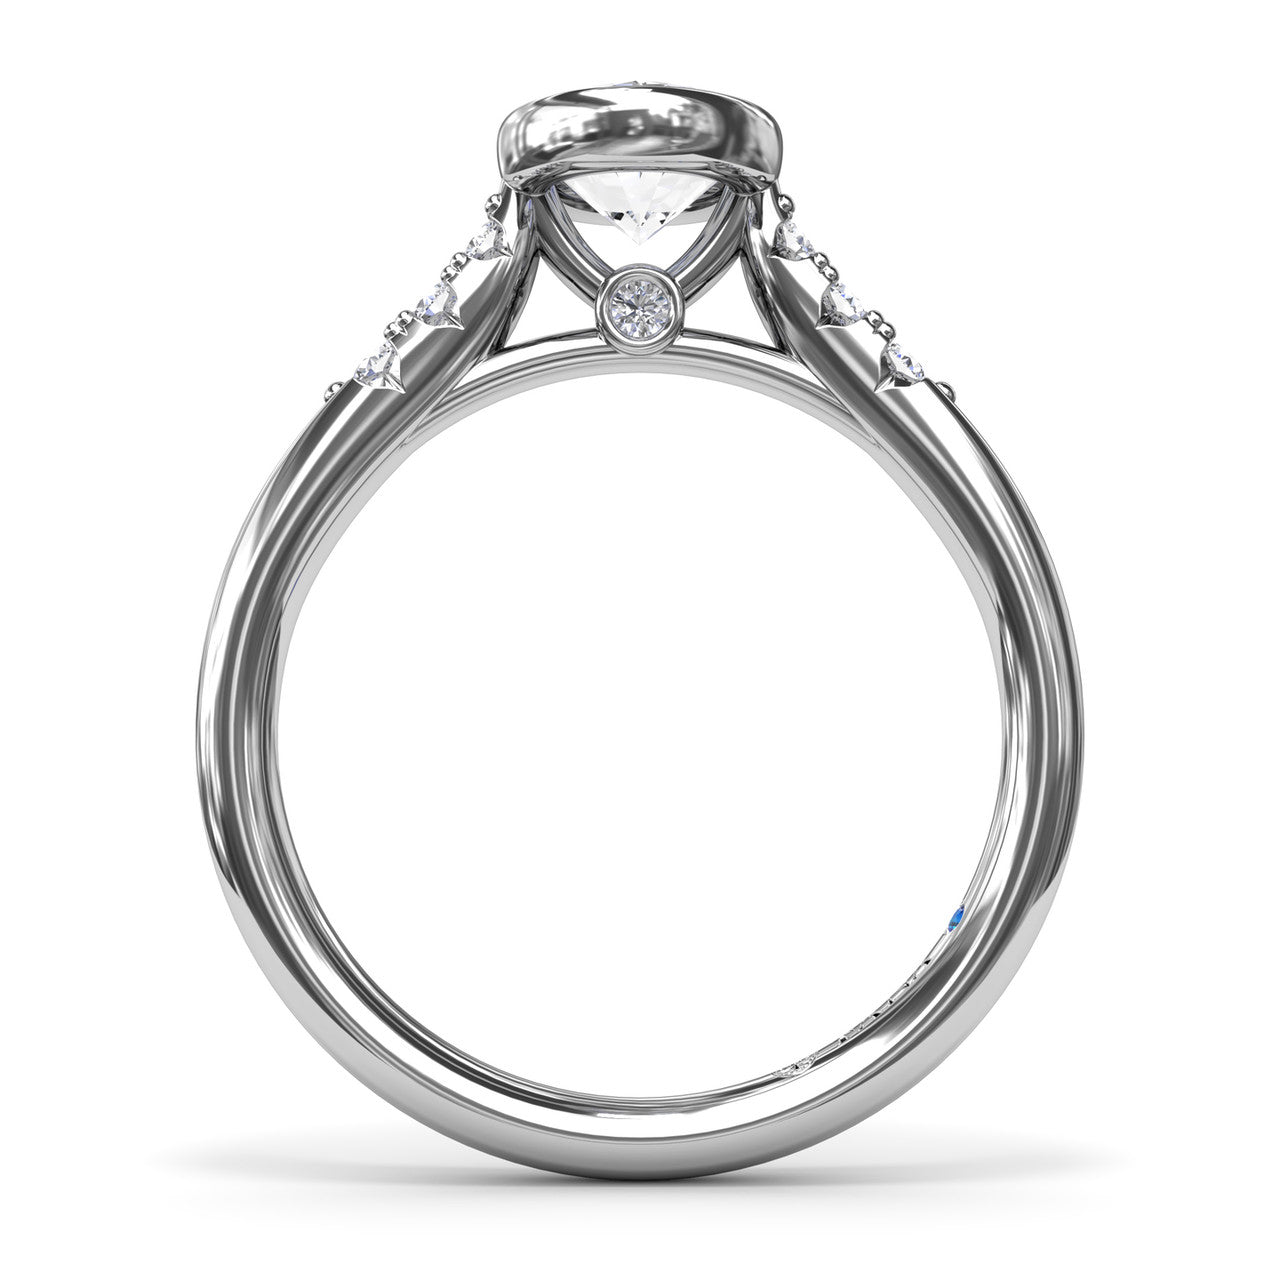 FANA 14KT White Gold Diamond Engagement Ring S4184/WG